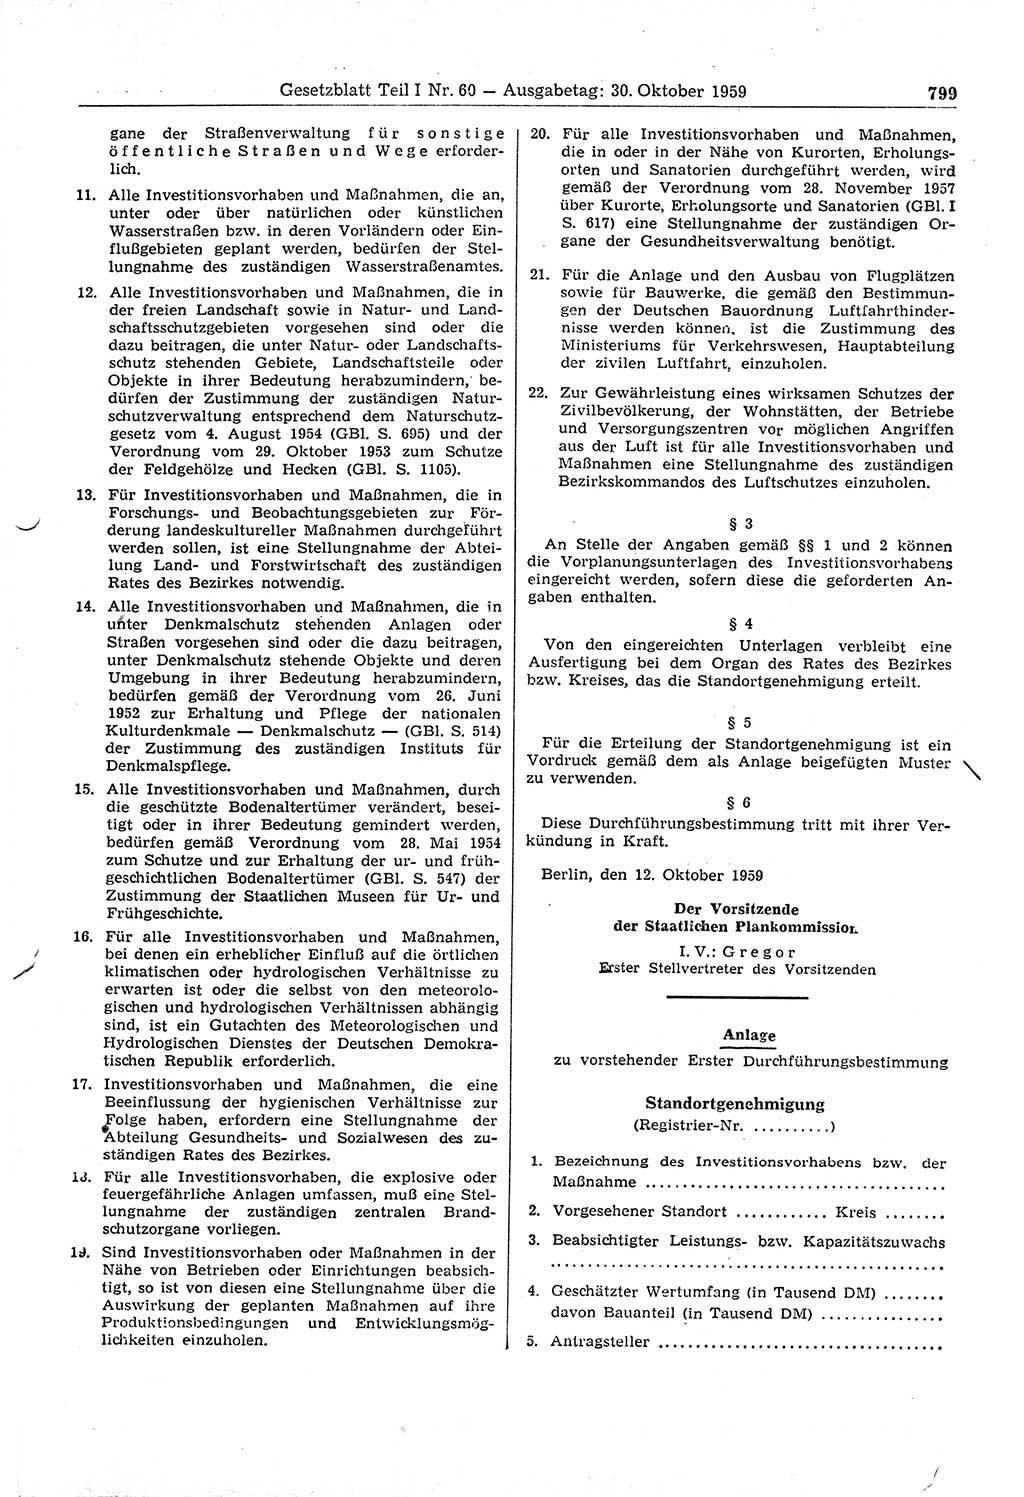 Gesetzblatt (GBl.) der Deutschen Demokratischen Republik (DDR) Teil Ⅰ 1959, Seite 799 (GBl. DDR Ⅰ 1959, S. 799)